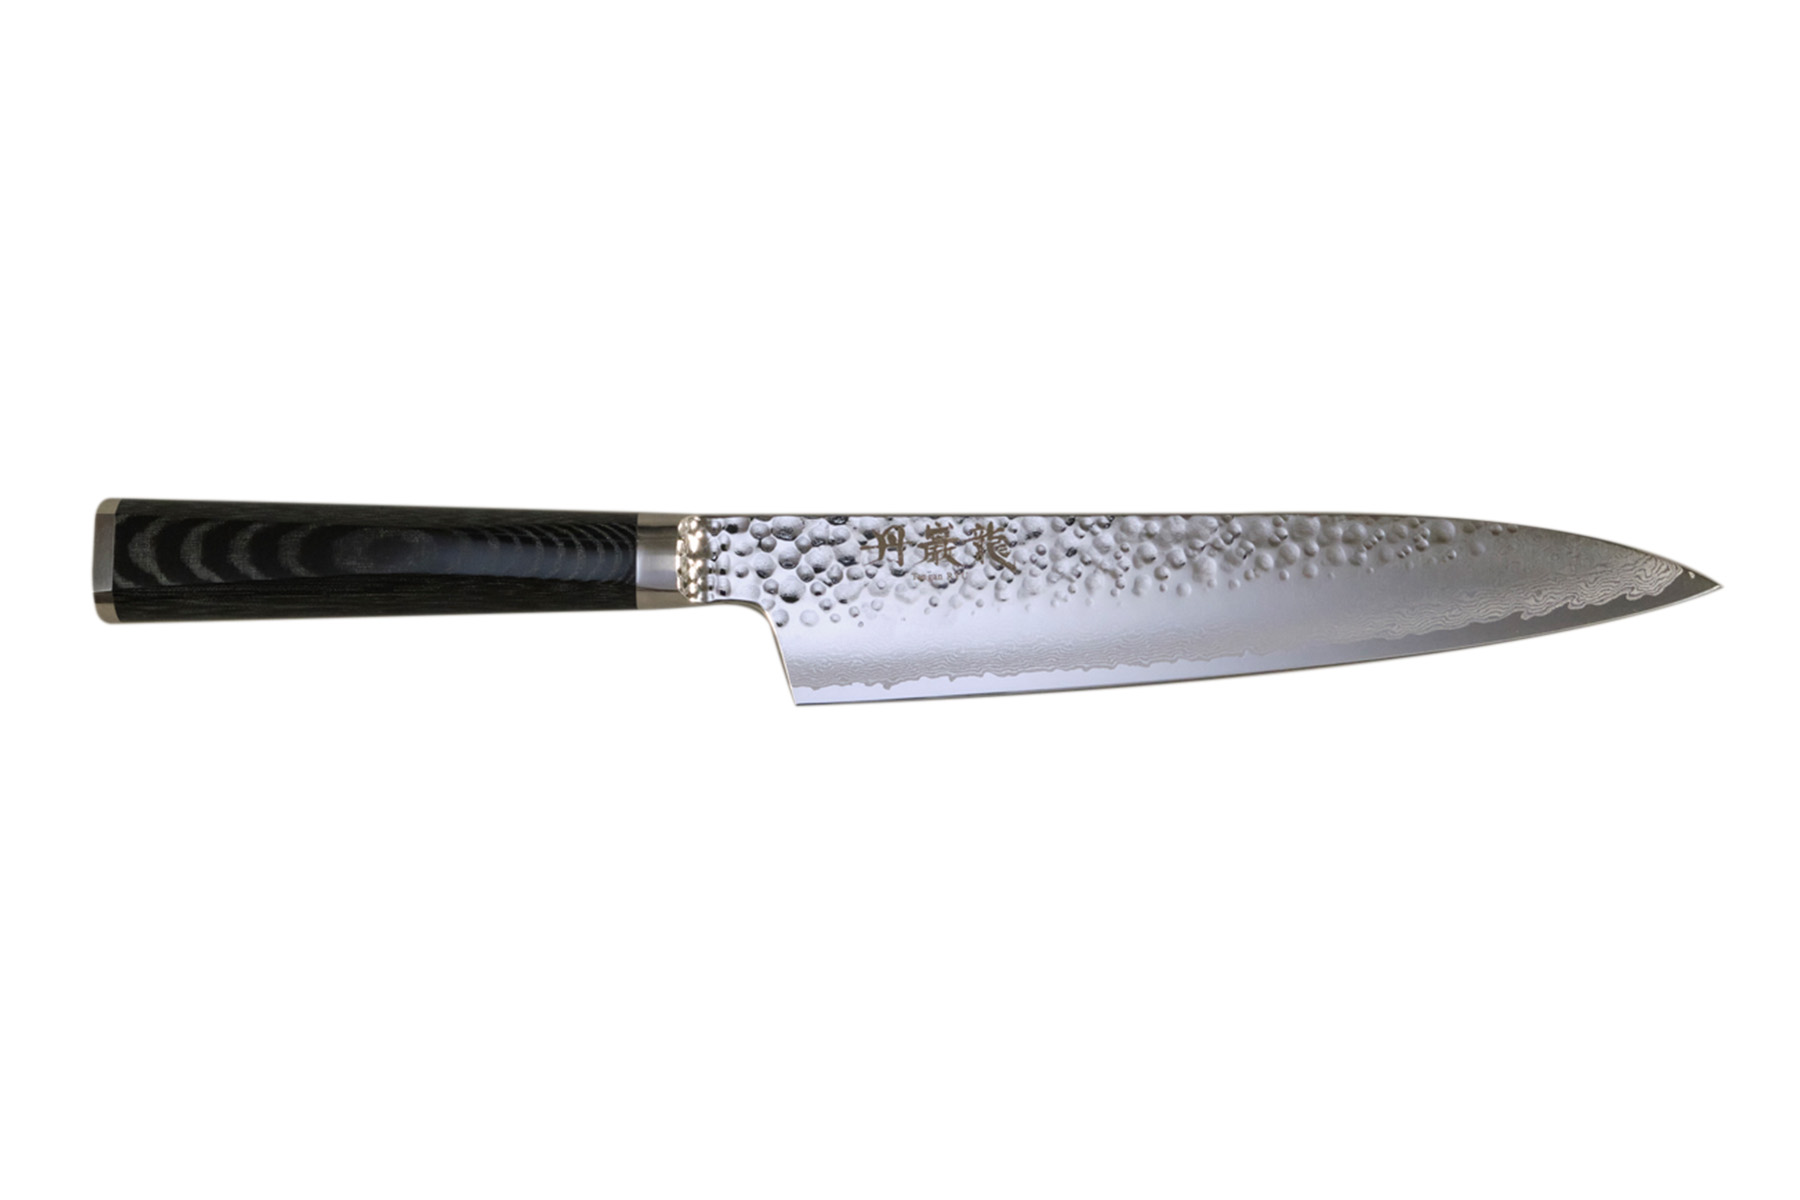 Couteau japonais Ryusen Tangan Ryu micarta - Couteau gyuto 21 cm